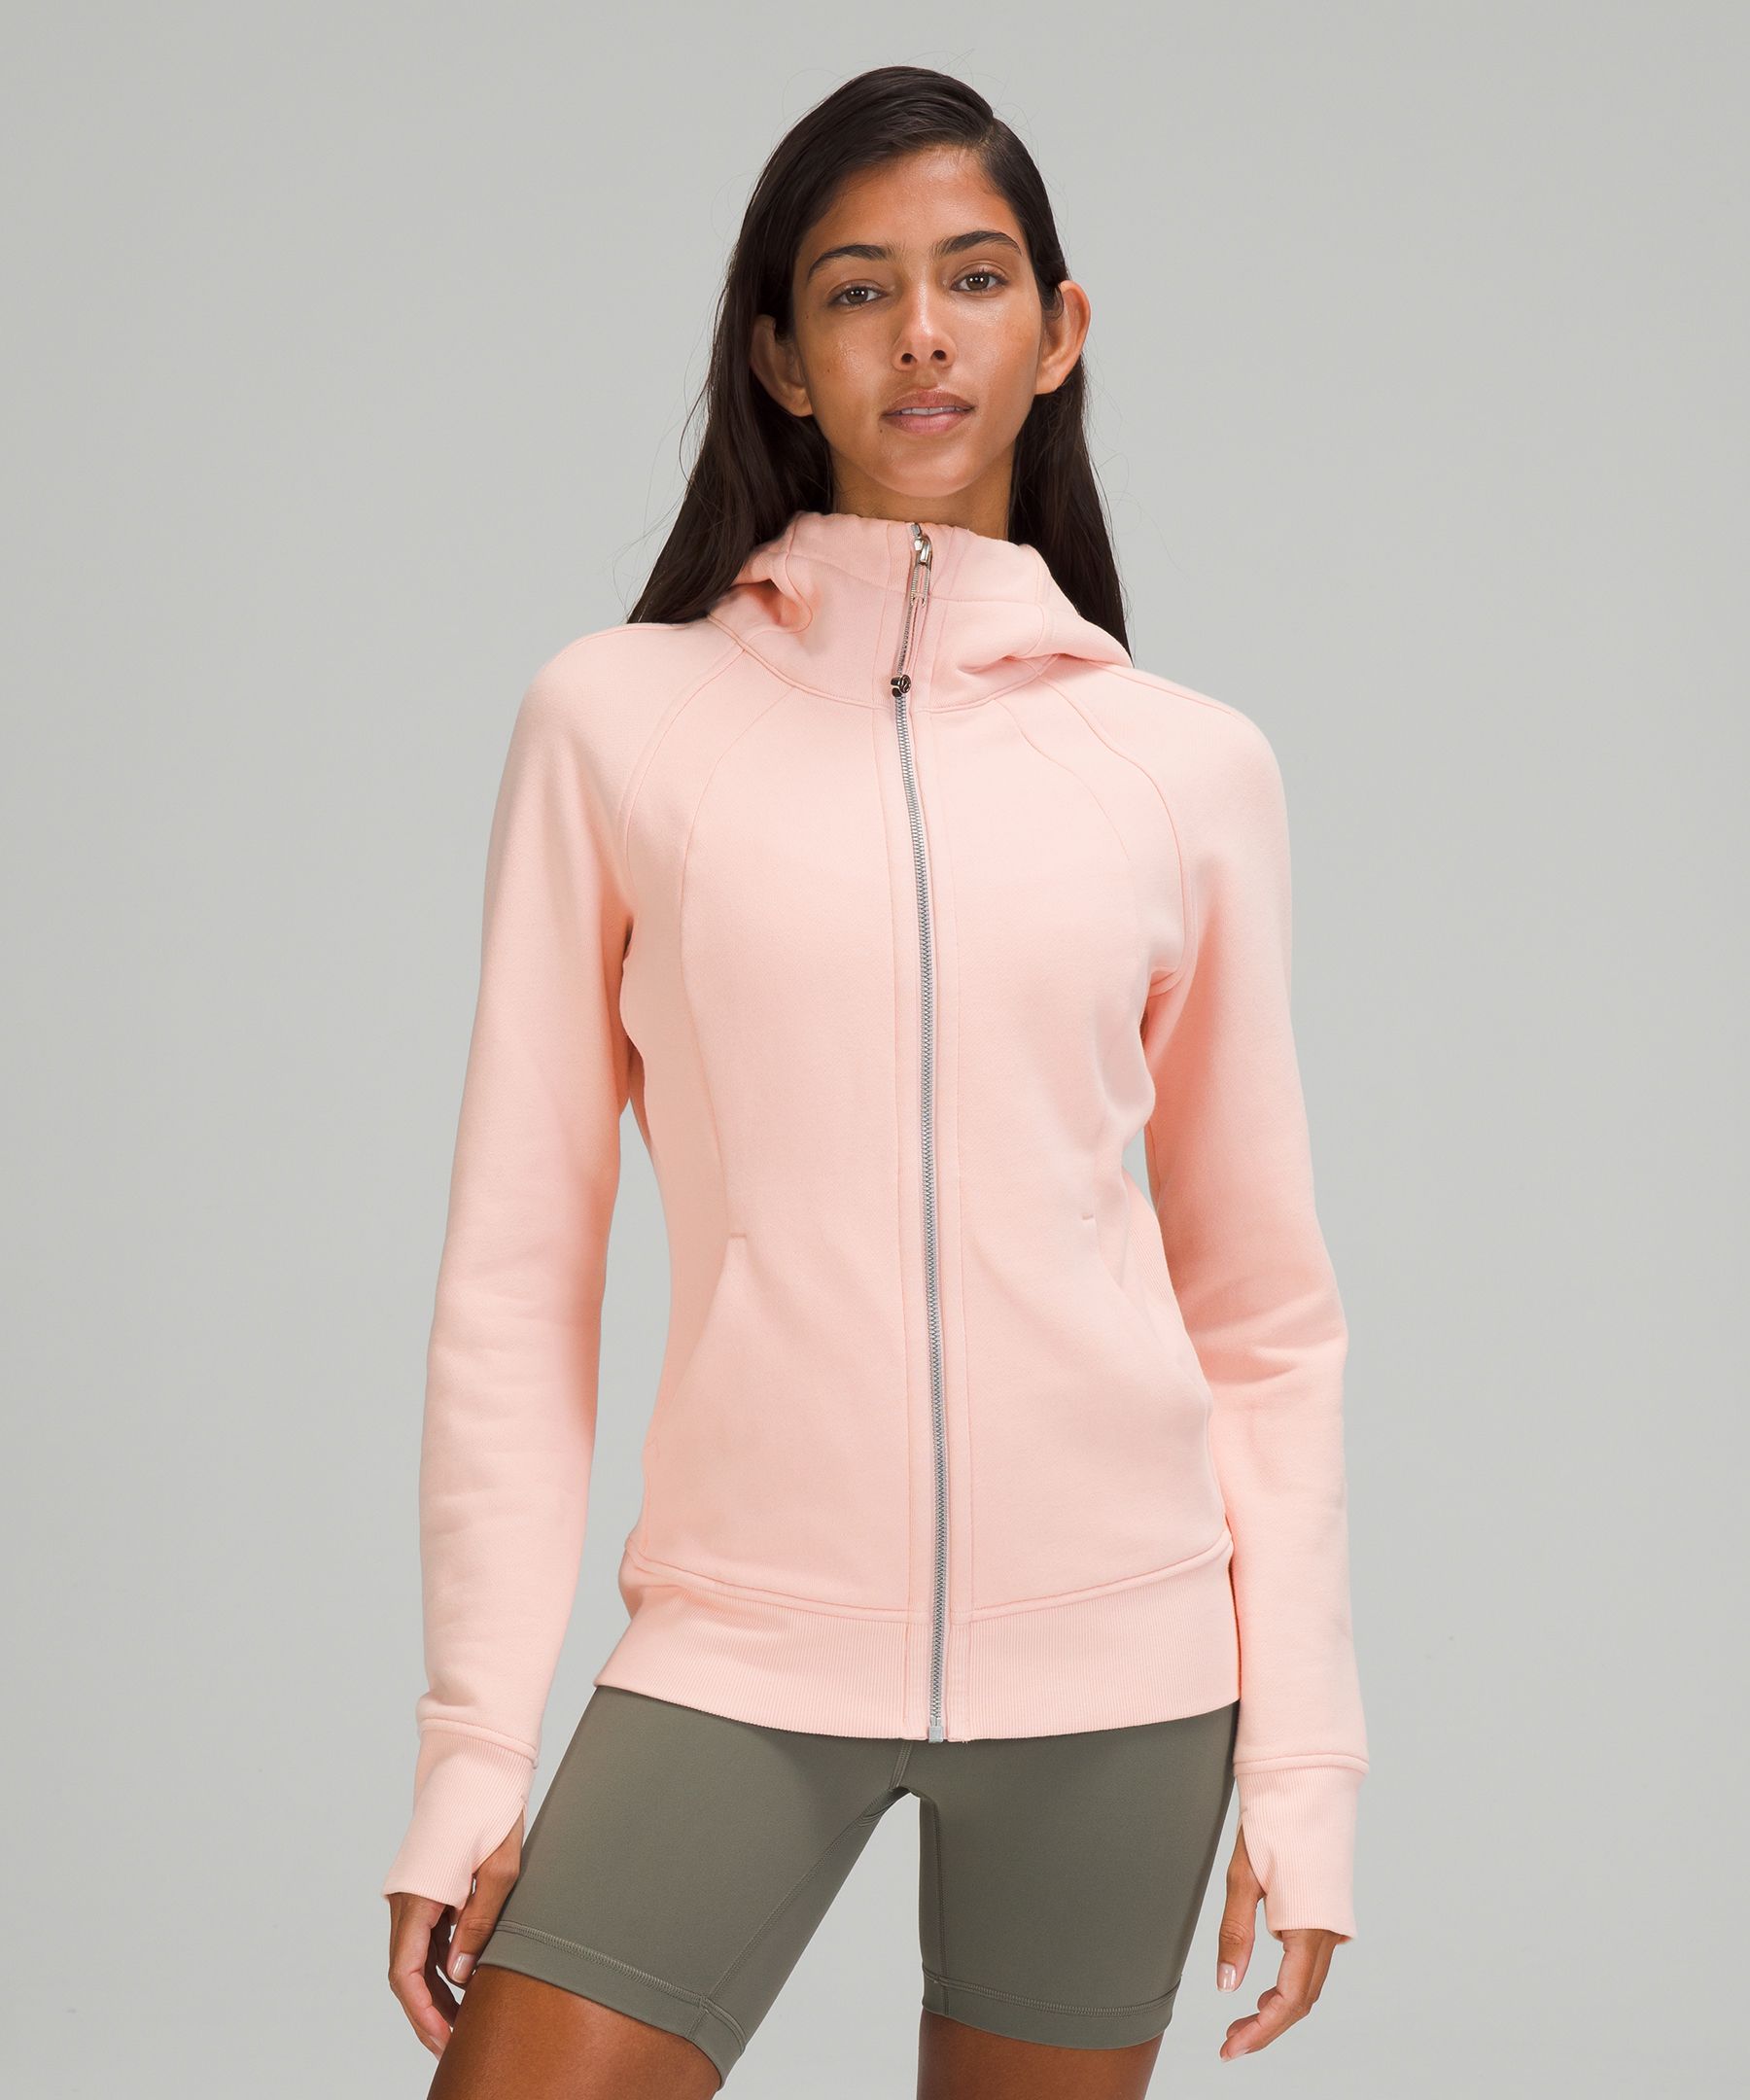 light pink lululemon jacket